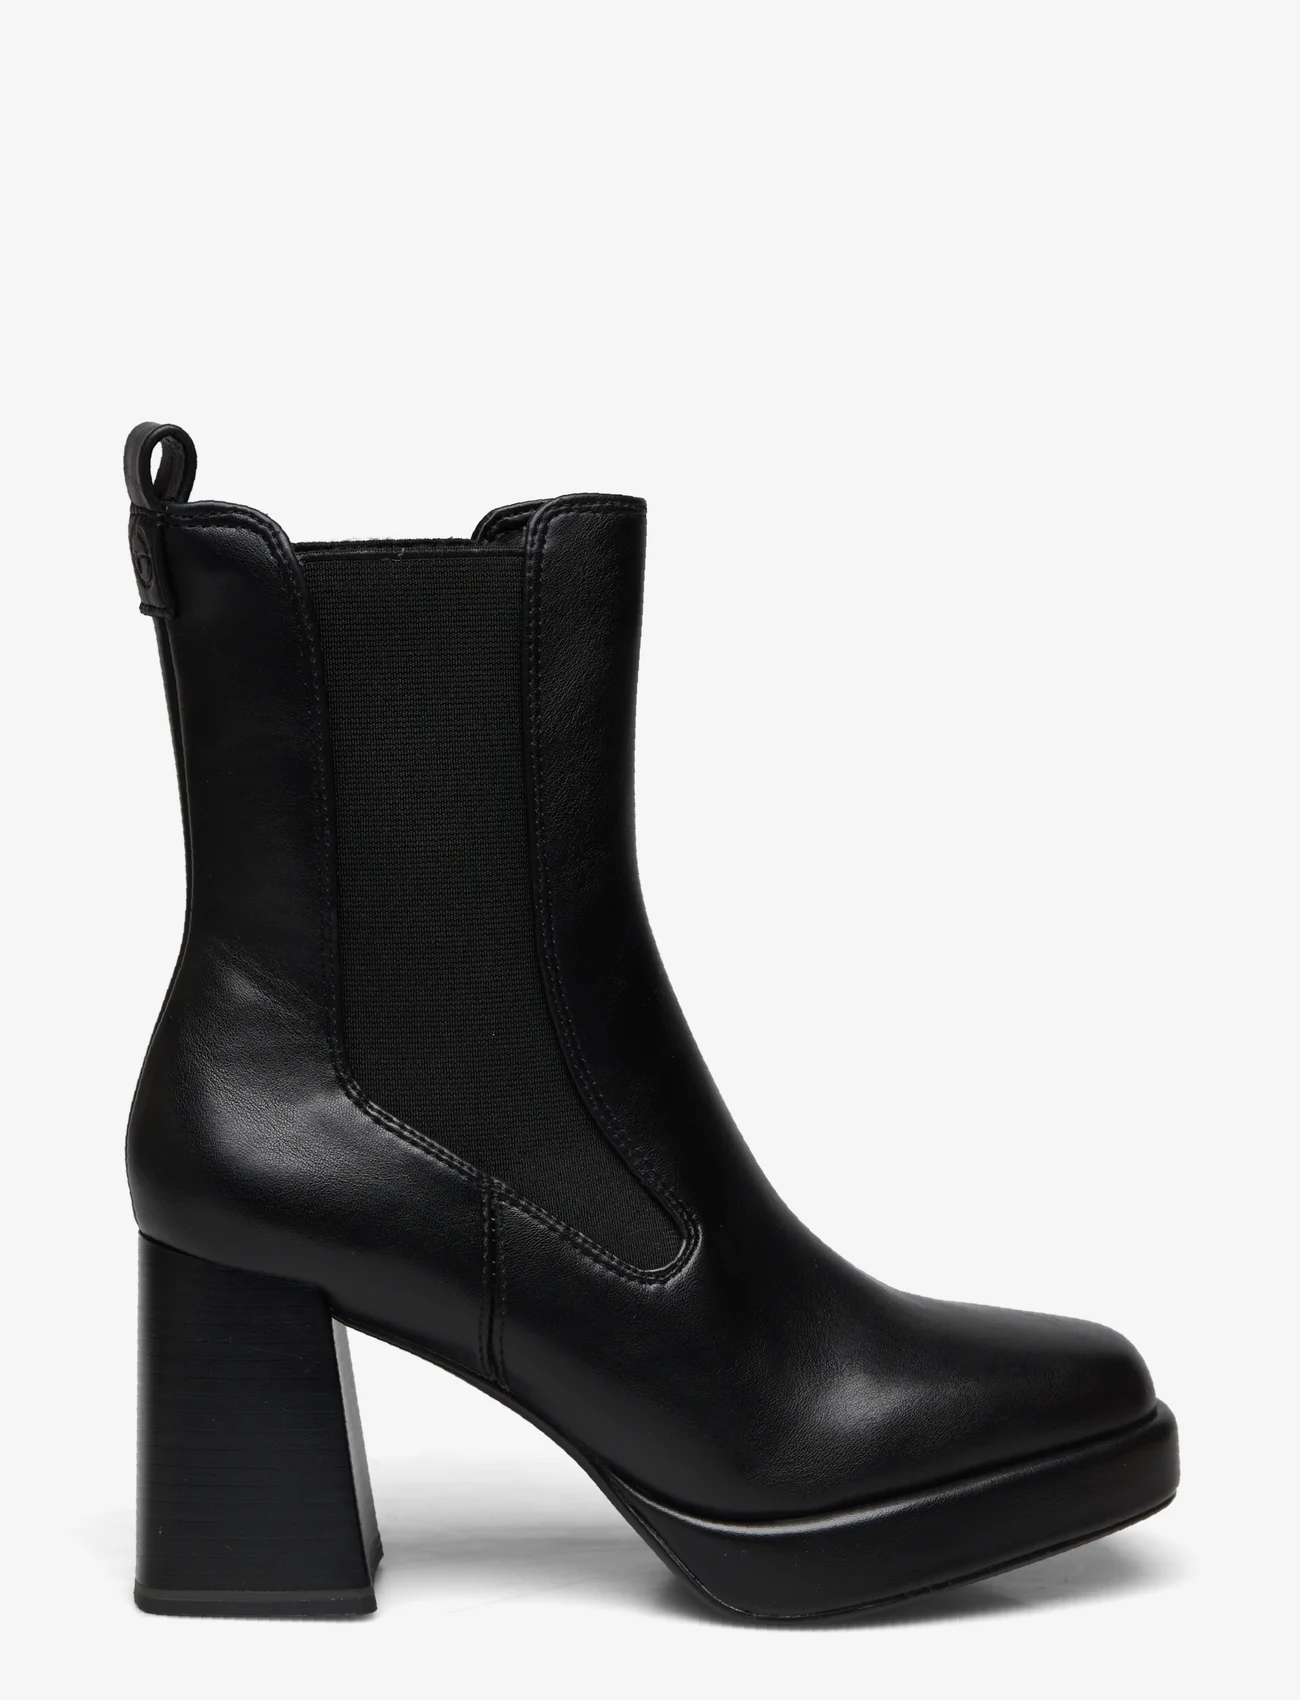 Tamaris - Women Boots - high heel - black matt - 1